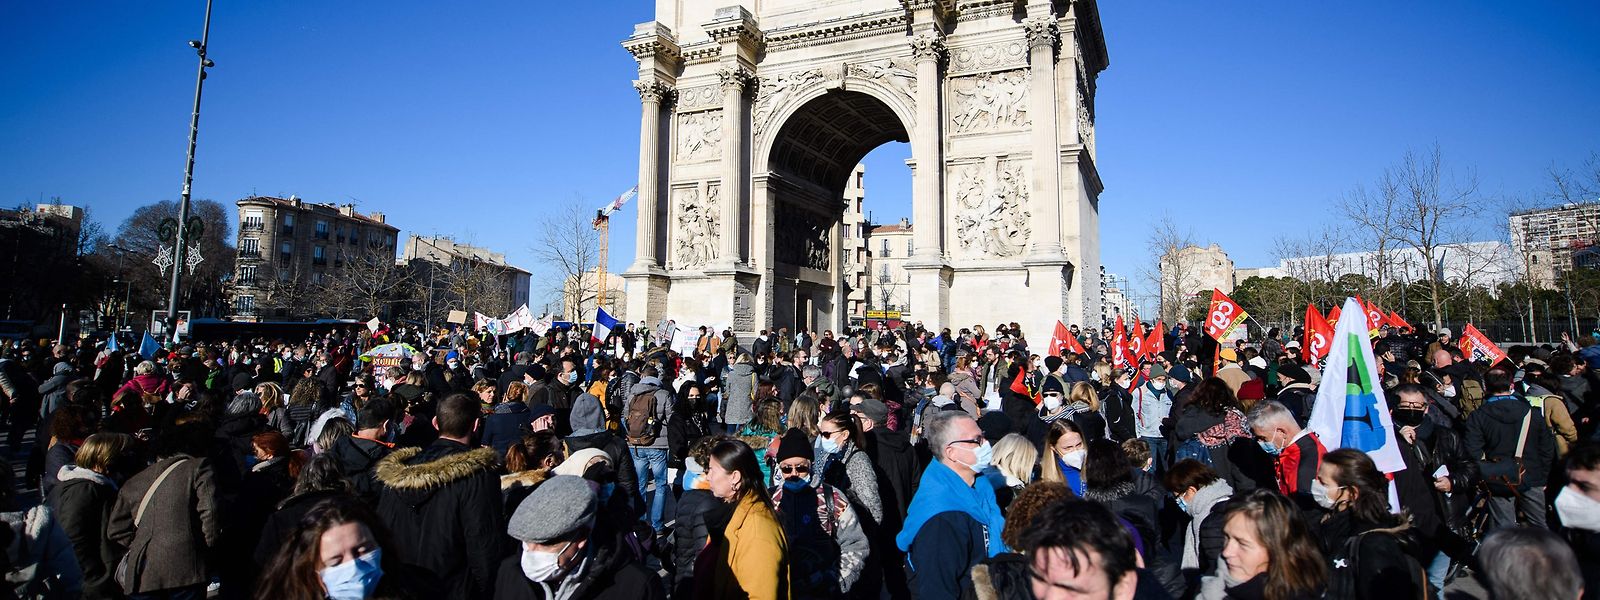 Lehrer und Schulpersonal versammeln sich in Südfrankreich während einer Demonstration, zu der die Lehrergewerkschaften aufgerufen haben, um «ein unbeschreibliches Chaos» aufgrund der Corona-Maßnahmen der neuen Regierung anzuprangern.